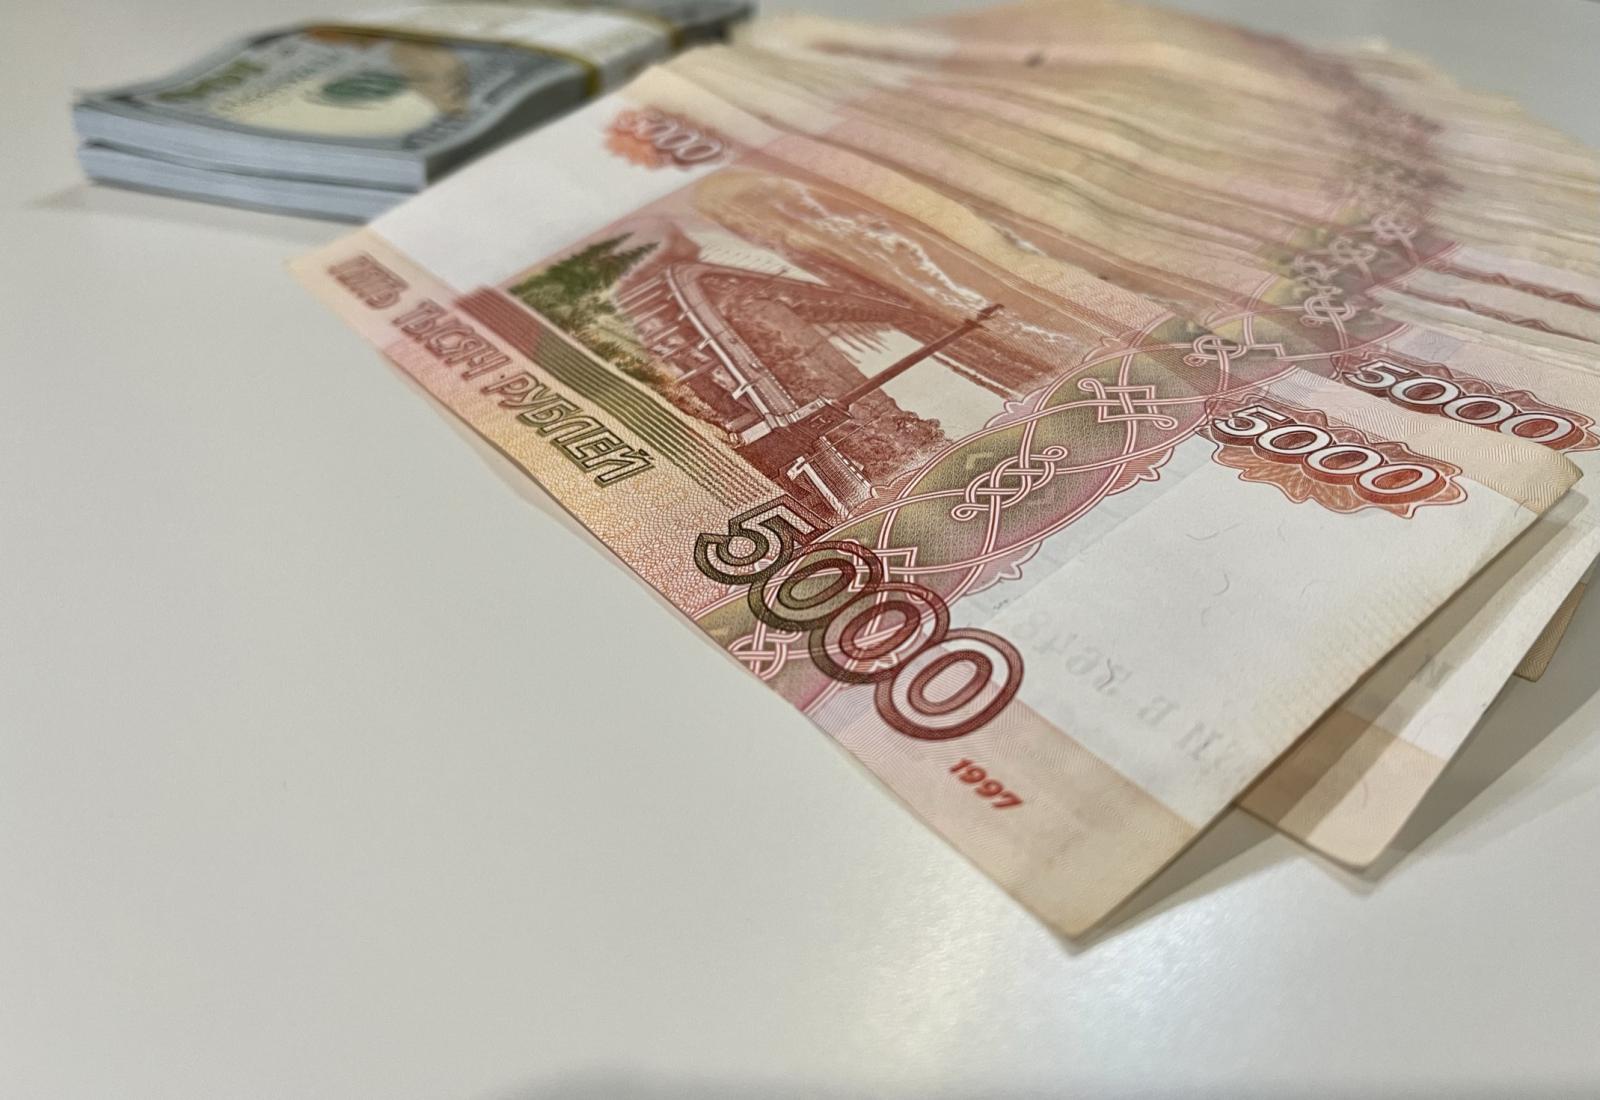 Брянцы должны выплатить имущественных налогов на сумму 477 млн рублей